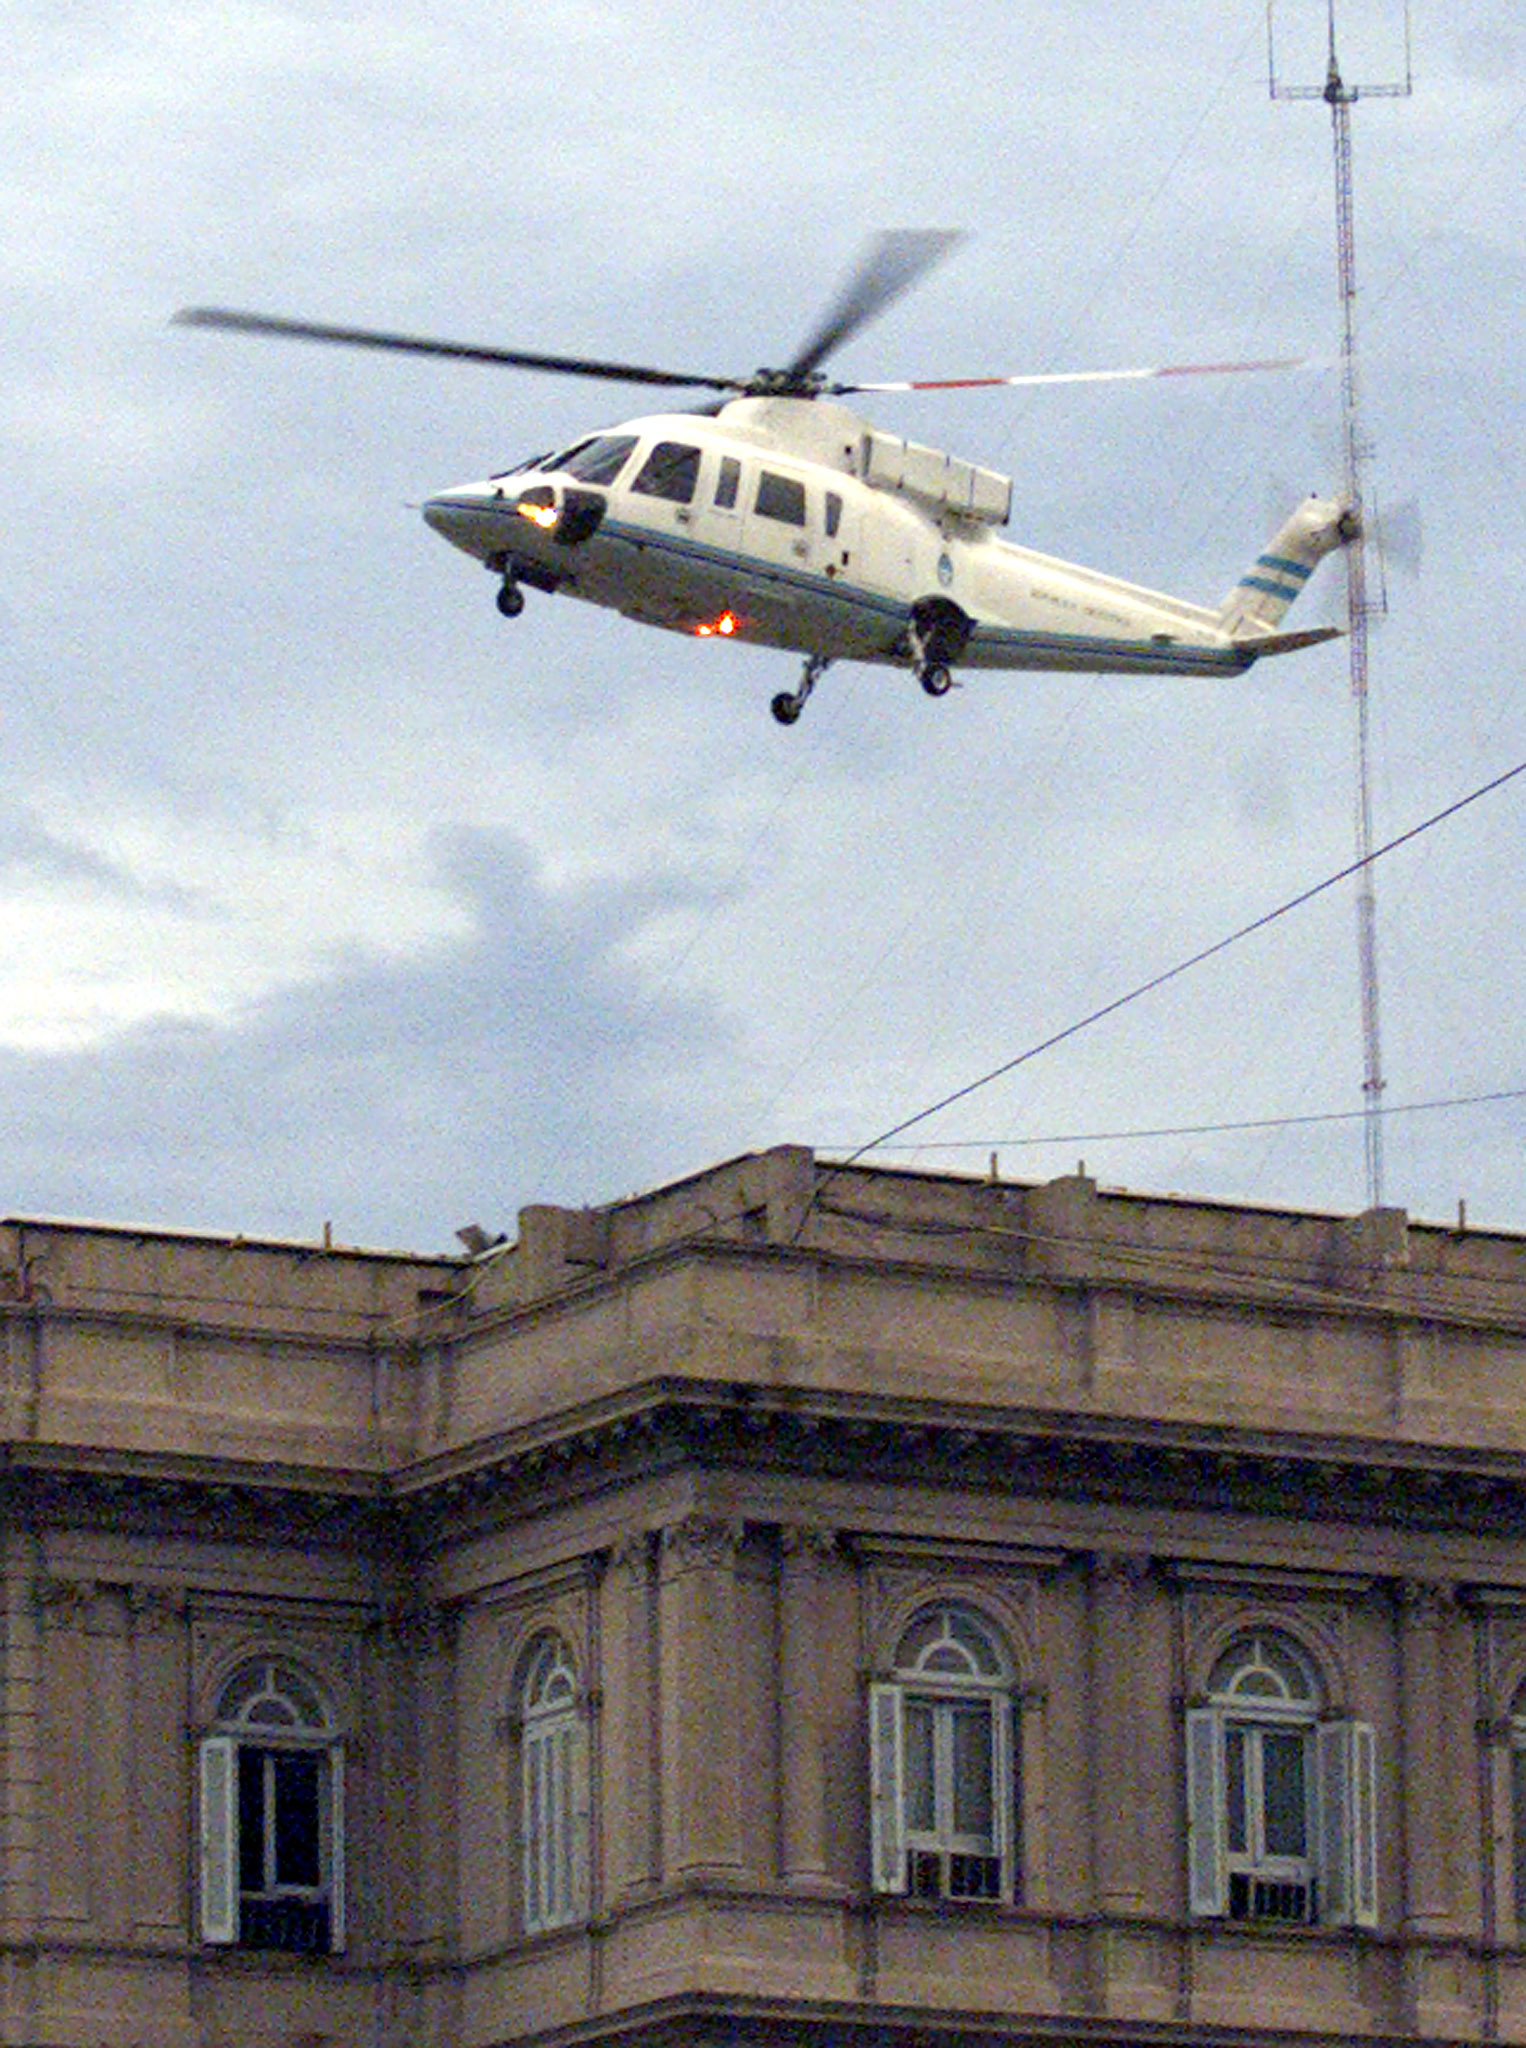 Το ελικόπτερο που φυγάδευσε έναν Αργεντινό πρόεδρο και προκαλεί αντιπαραθέσεις